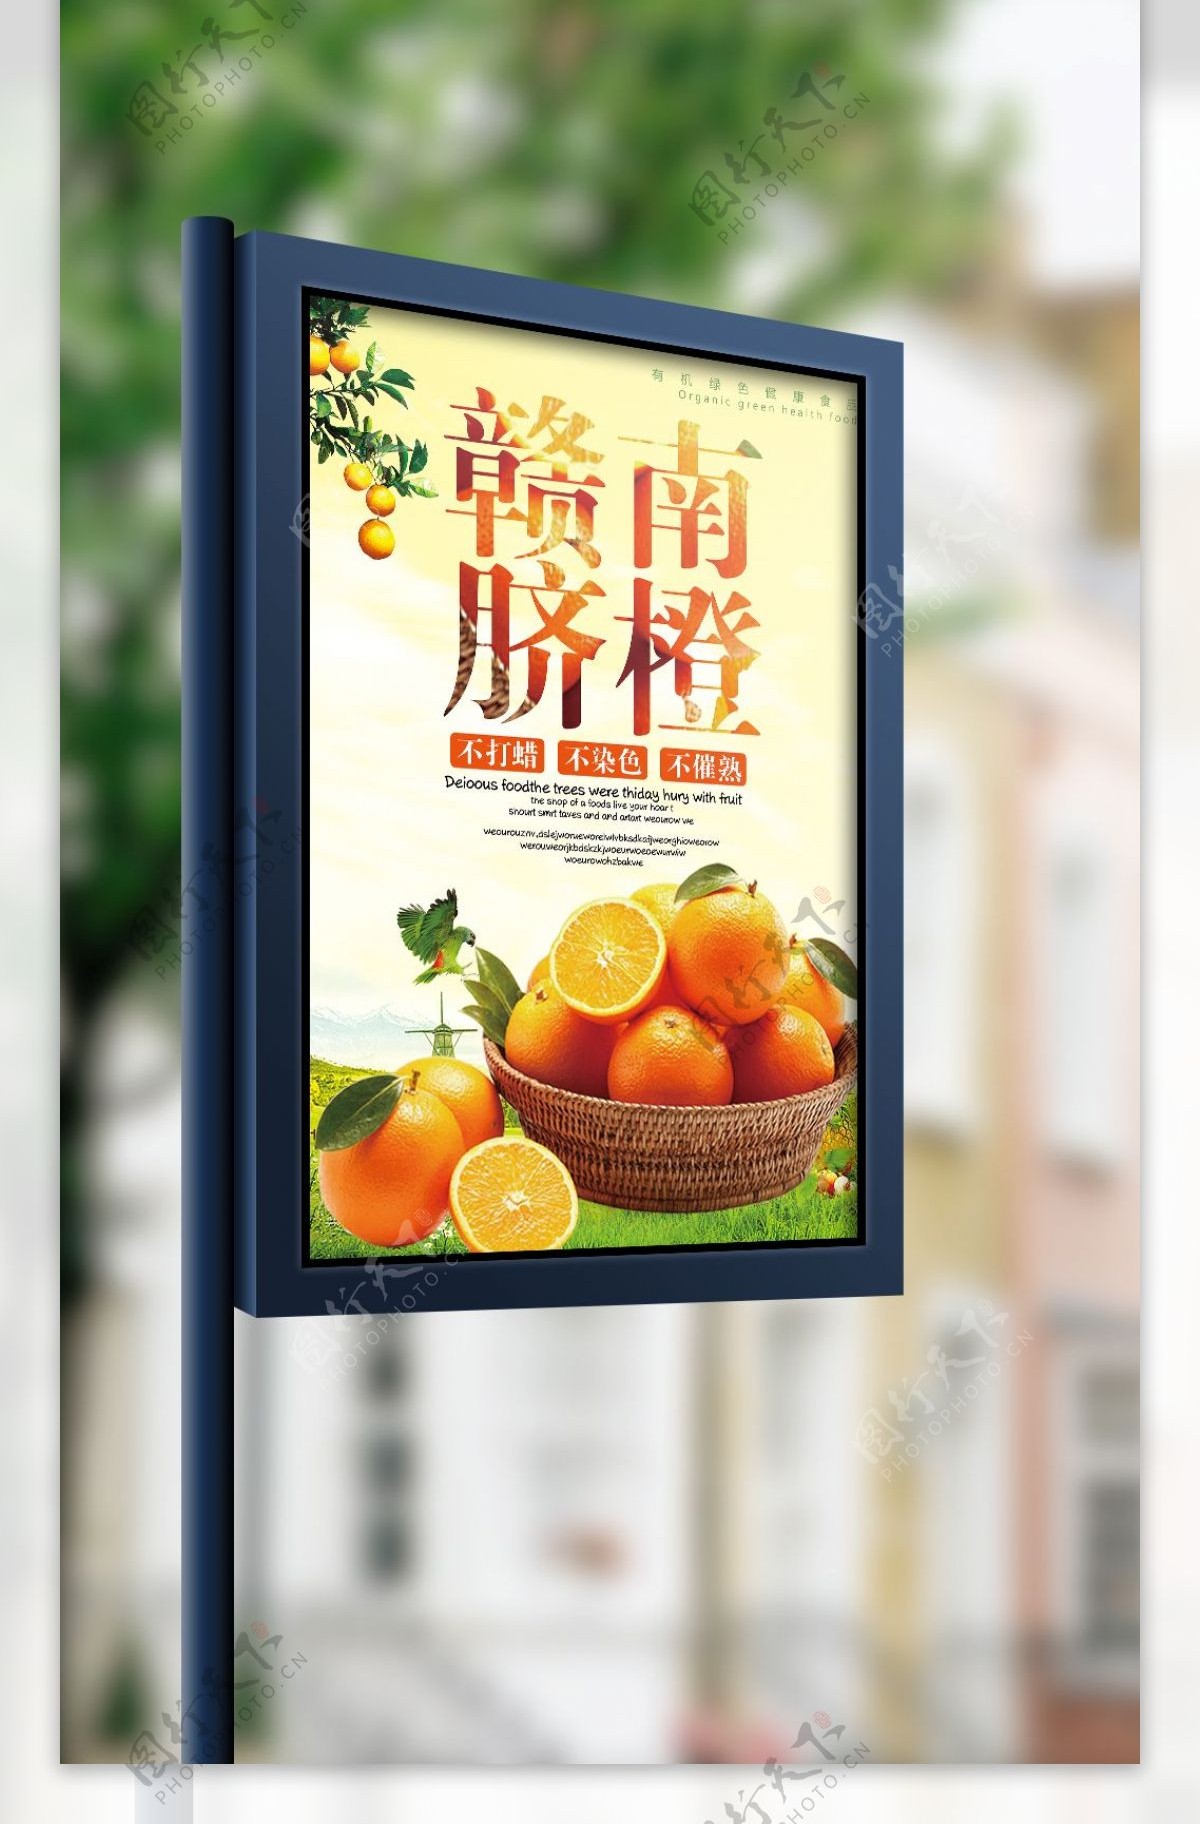 2017时尚大气赣南脐橙水果海报设计模板